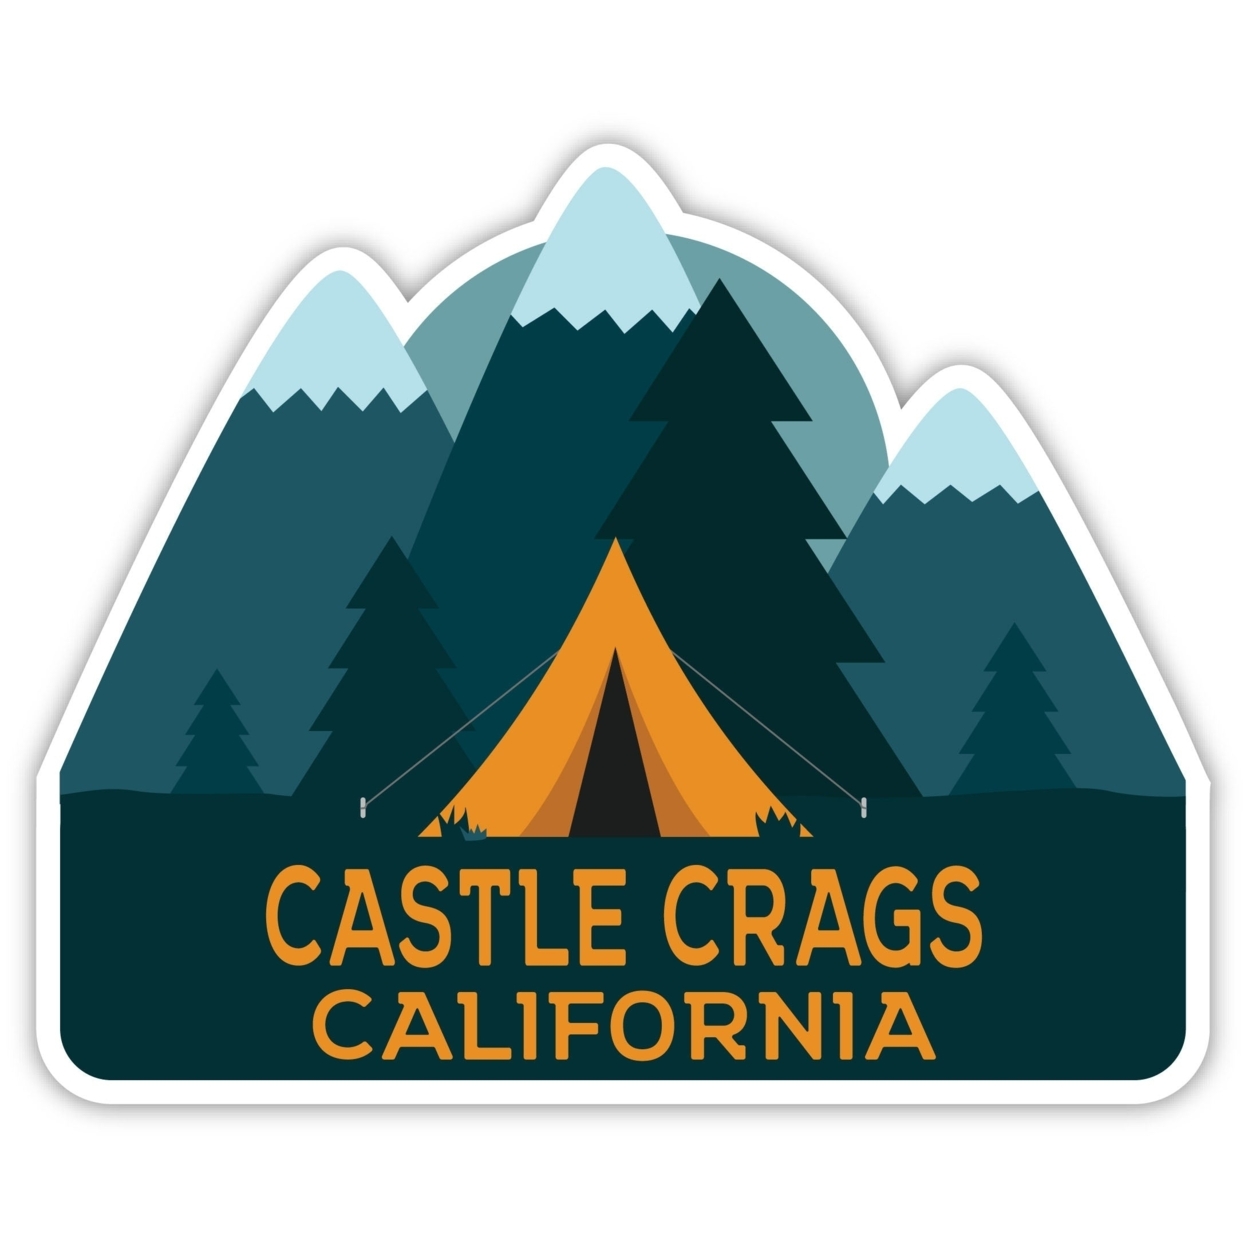 Castle Crags California Souvenir Decorative Stickers (Choose Theme And Size) - Single Unit, 12-Inch, Tent